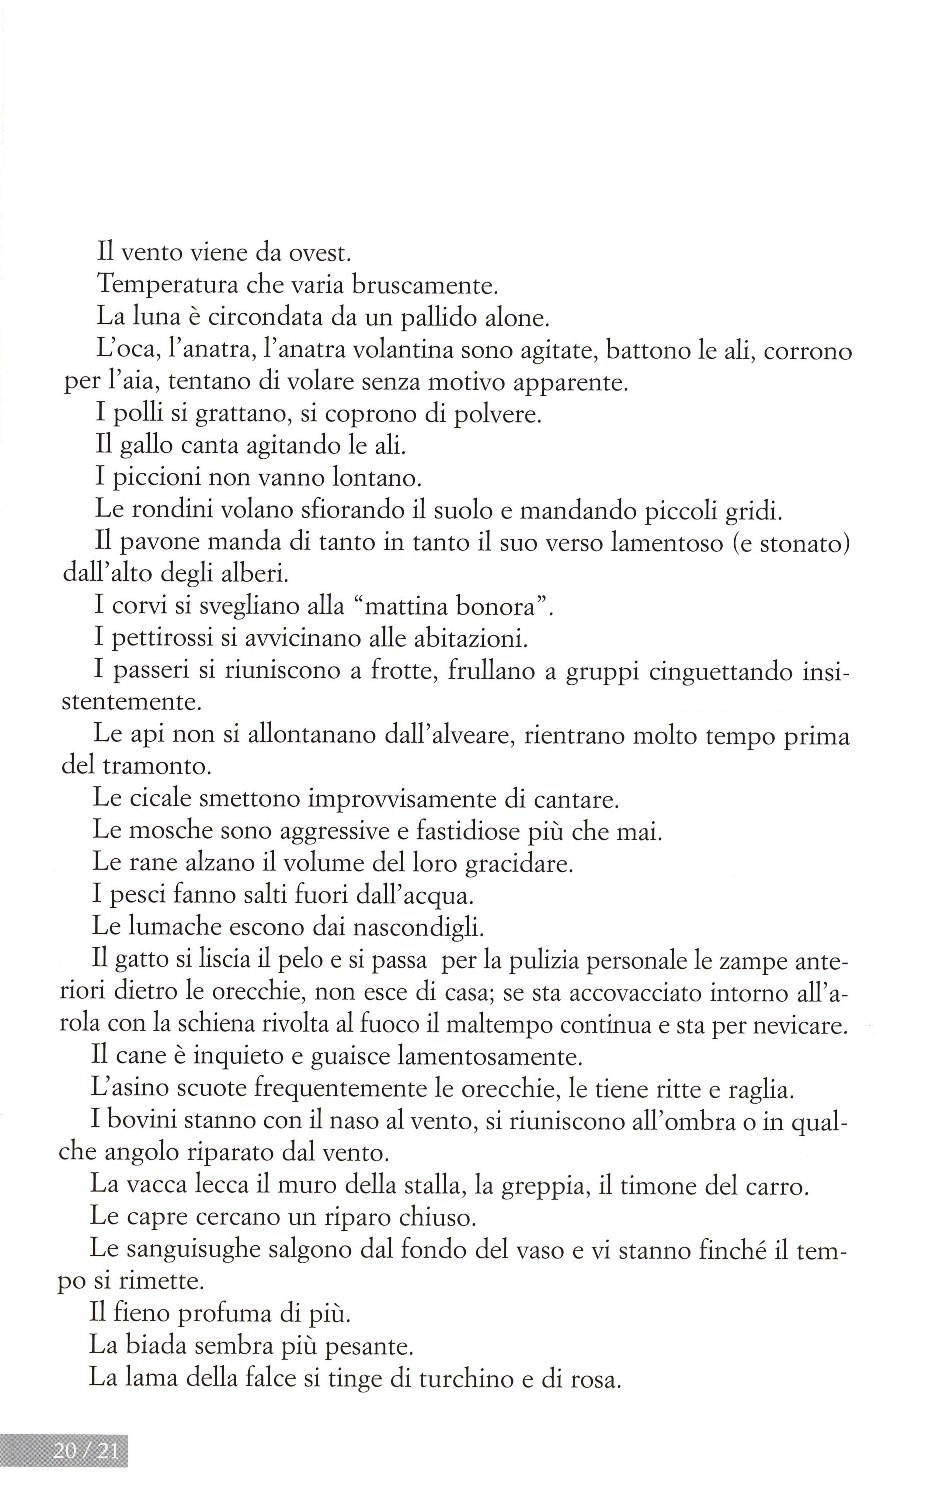 La torr i arduna tutti 2006 p.020